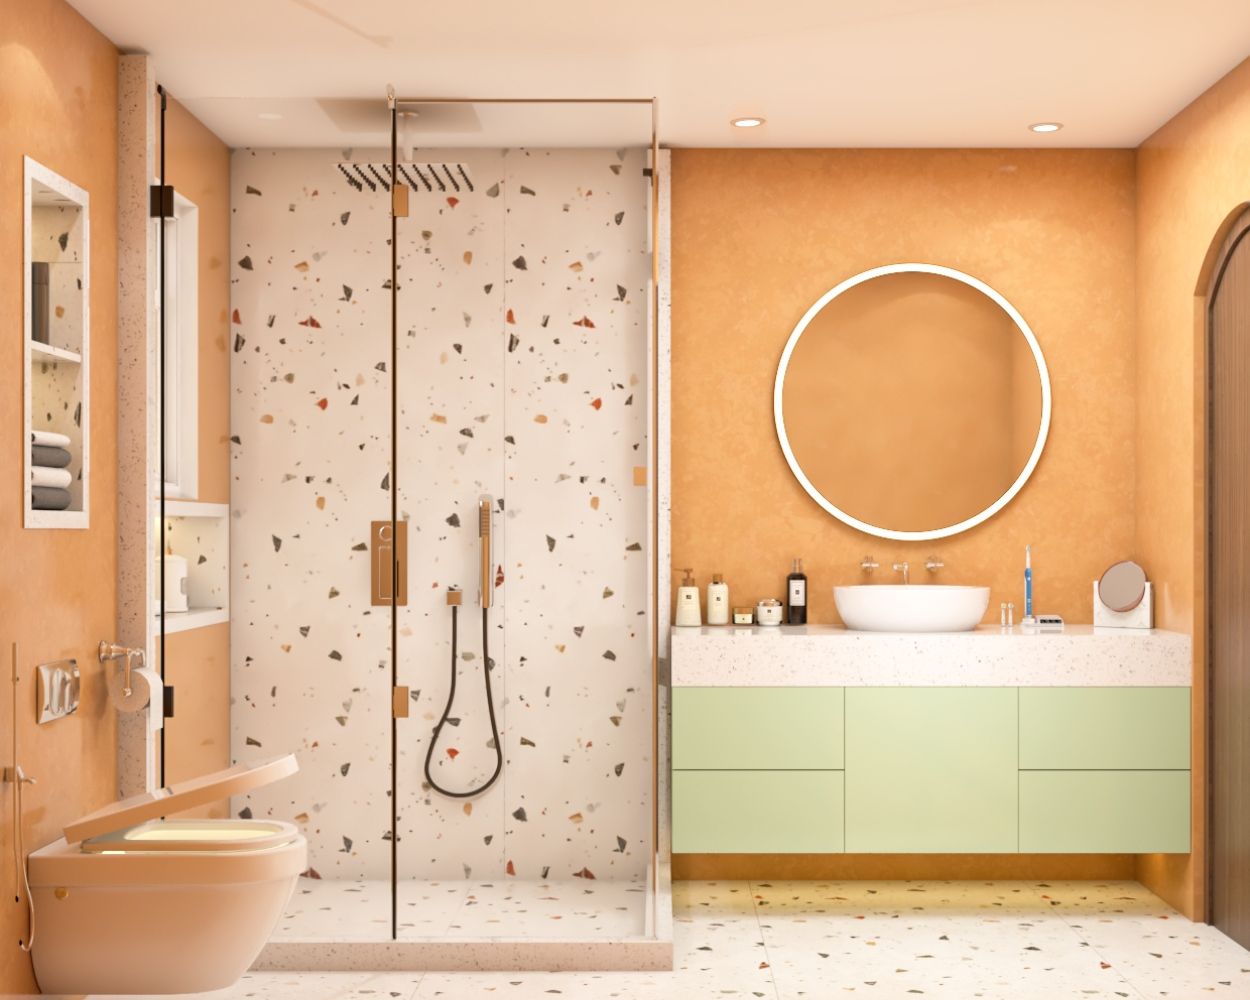 Contemporary Bathroom Design Idea With Peach And White Terrazzo Tiles